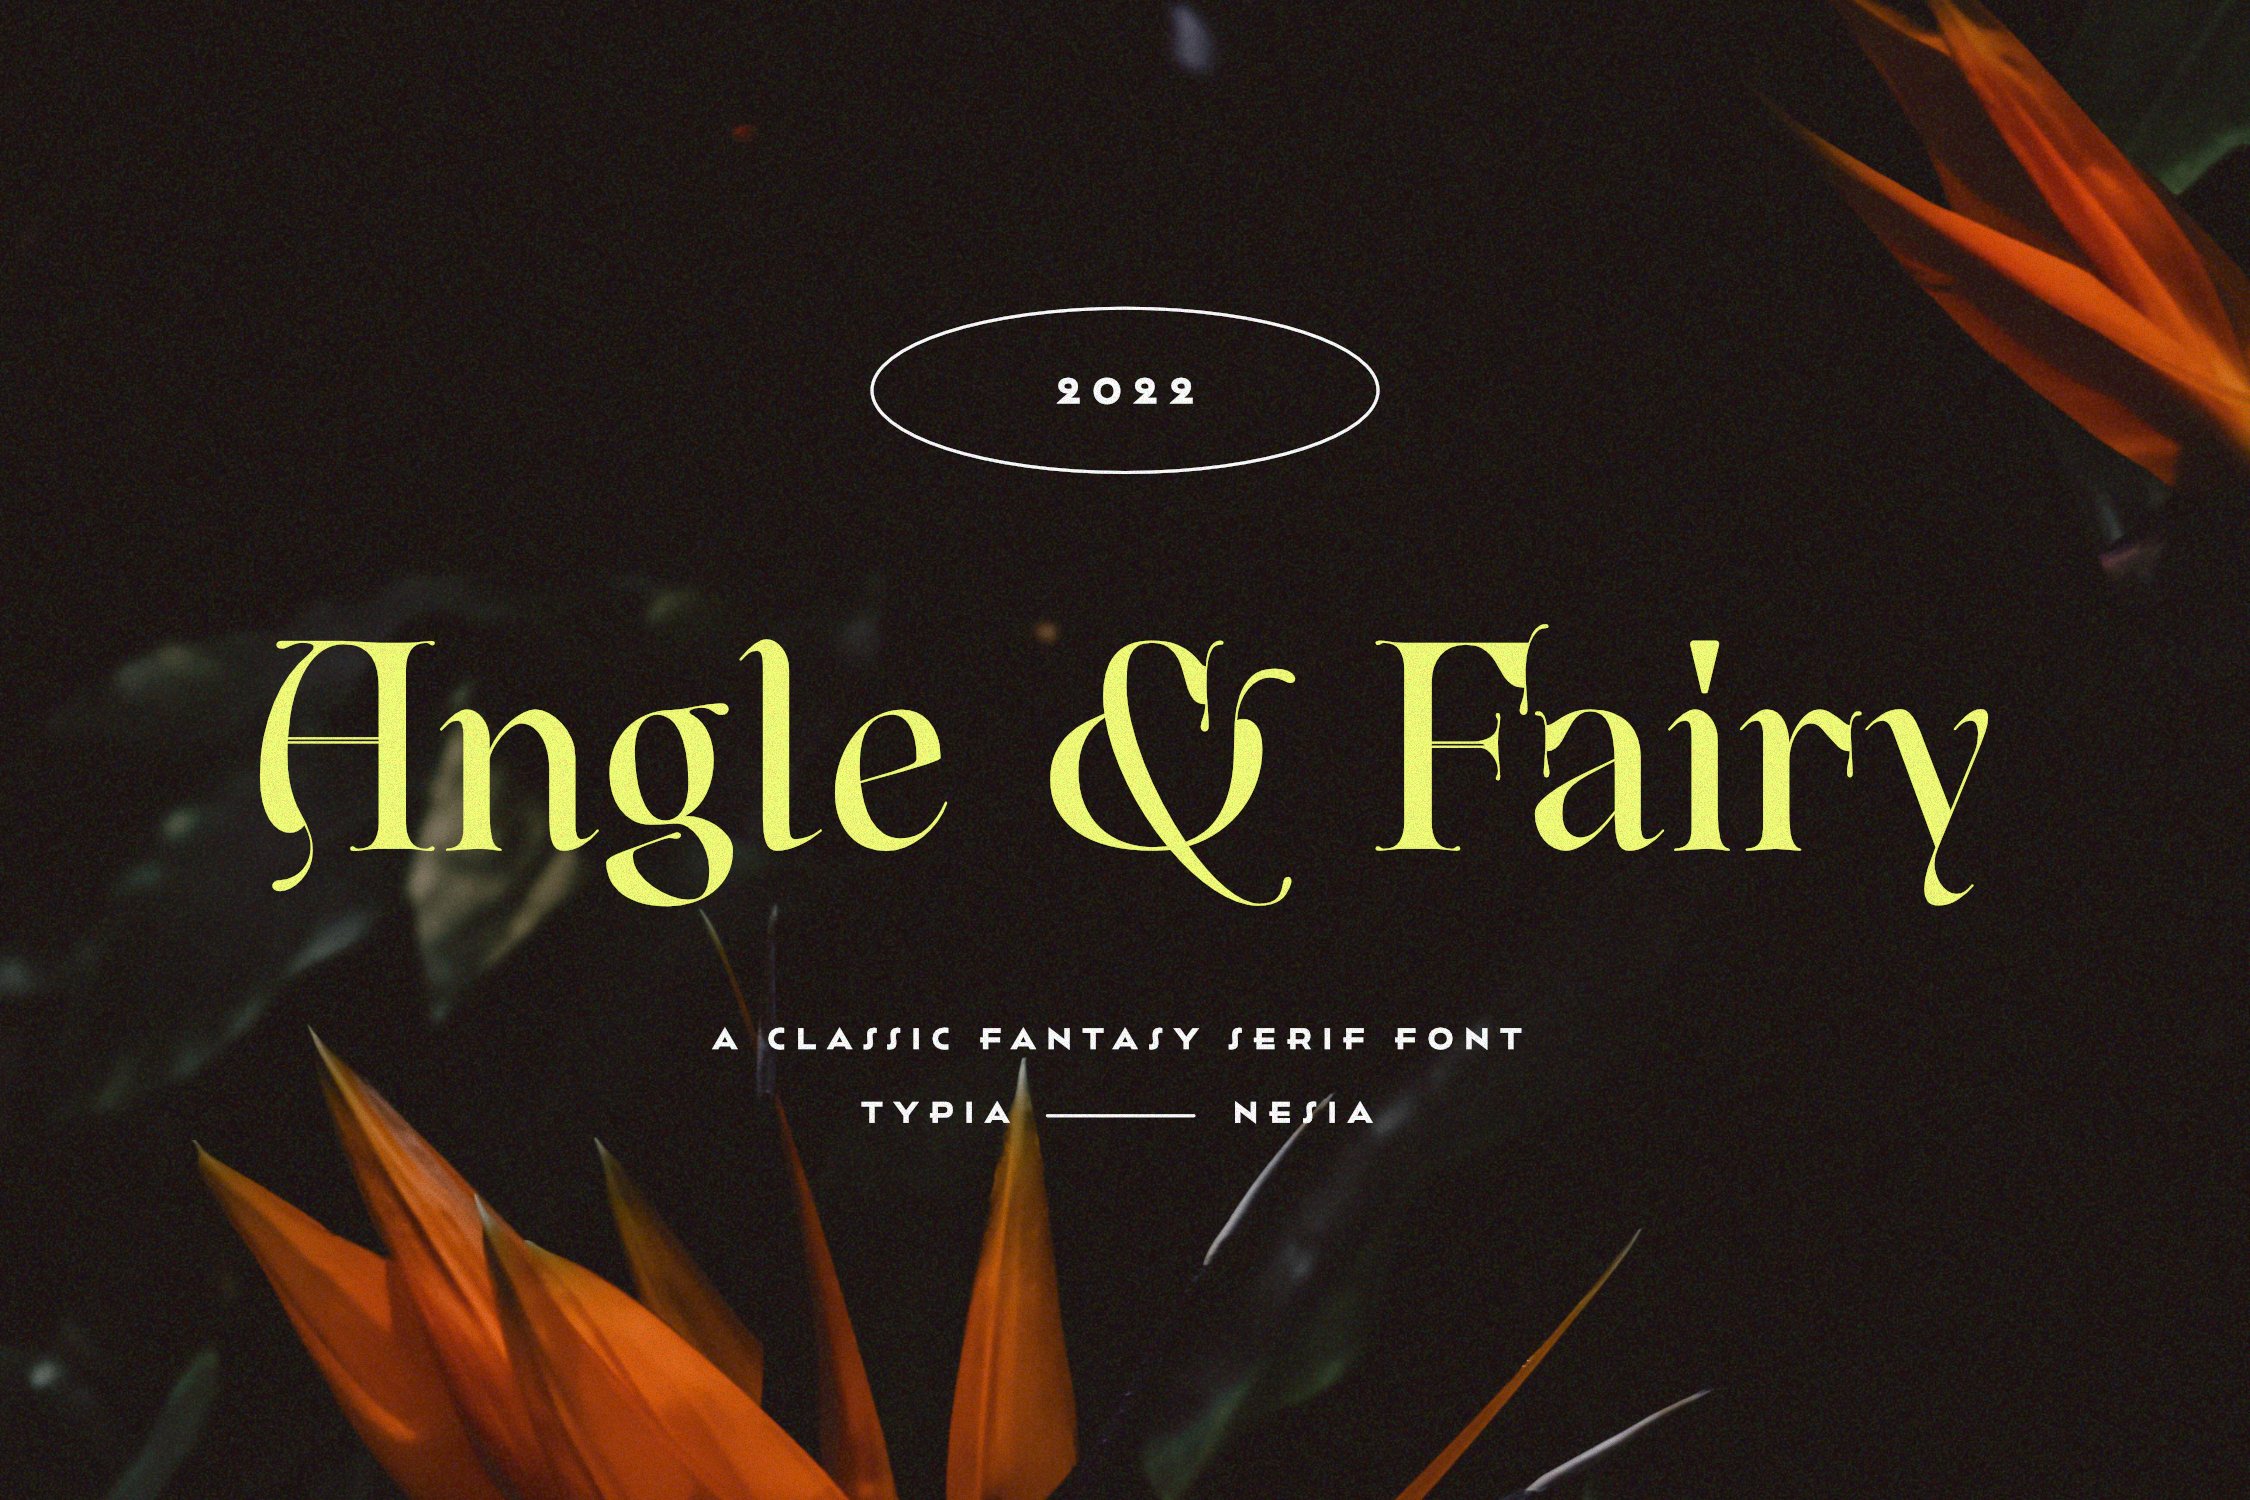 Angle & Fairy Serif cover image.